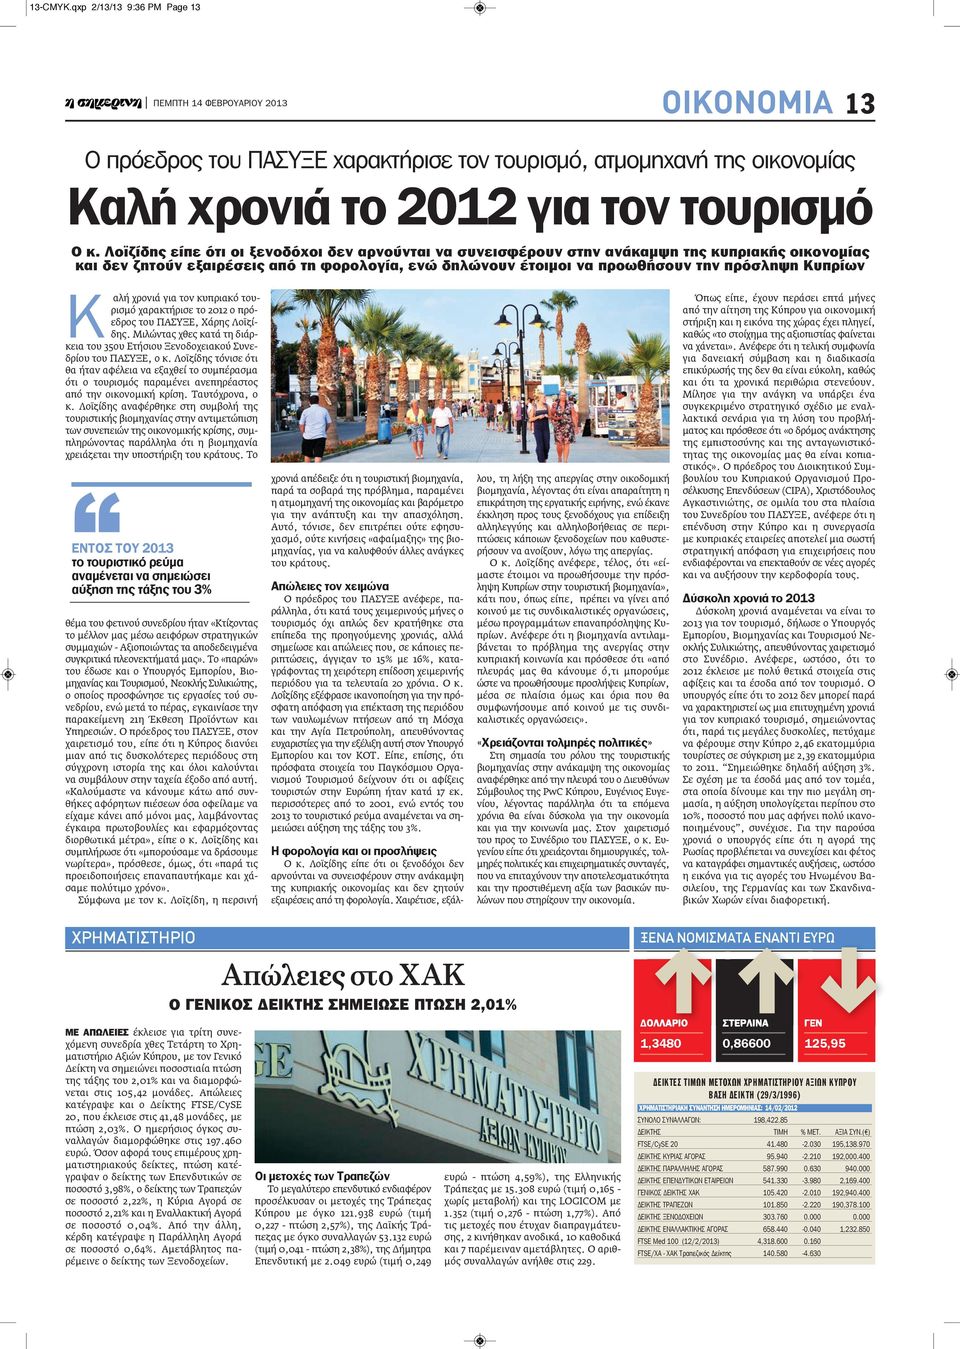 Κ αλή χρονιά για τον κυπριακό τουρισμό χαρακτήρισε το 2012 ο πρόεδρος του ΠΑΣΥΞΕ, Χάρης Λοϊζίδης. Μιλώντας χθες κατά τη διάρκεια του 35ου Ετήσιου Ξενοδοχειακού Συνεδρίου του ΠΑΣΥΞΕ, ο κ.